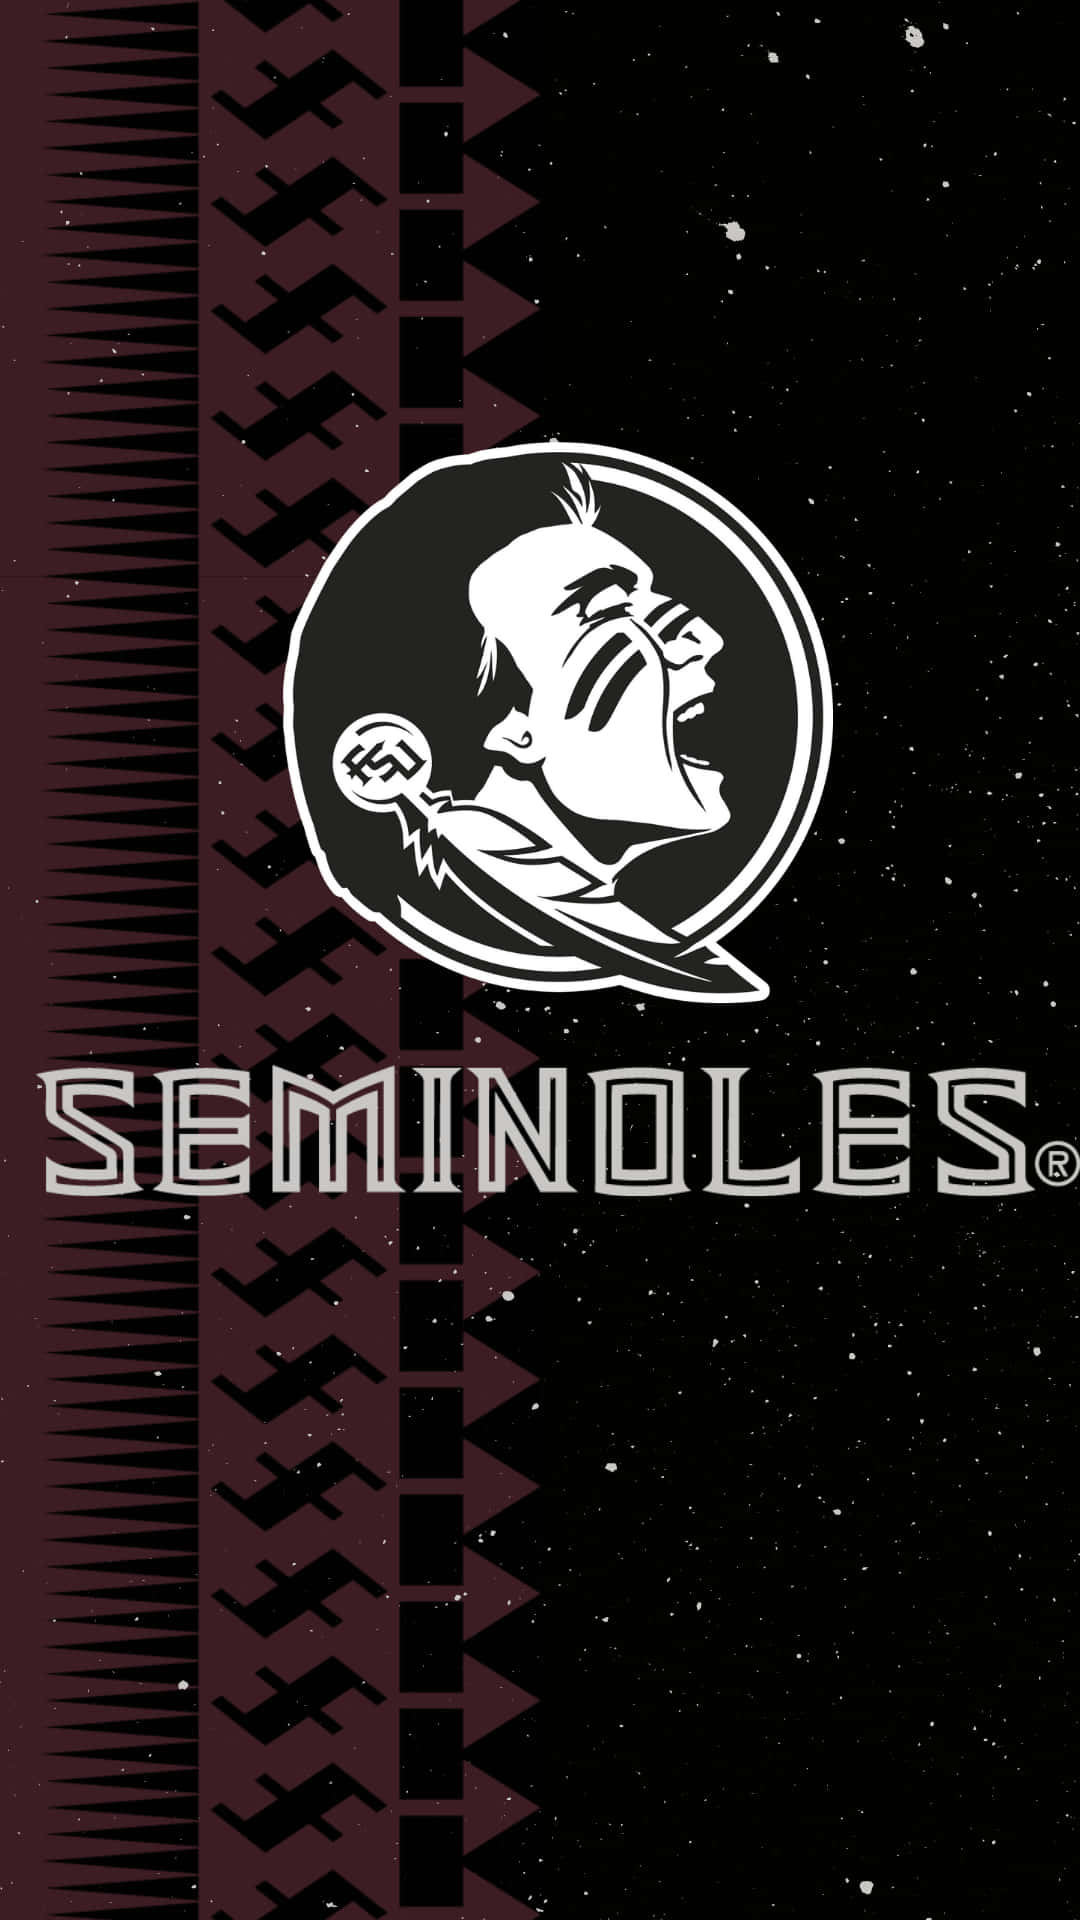 fsu seminoles logo wallpaper